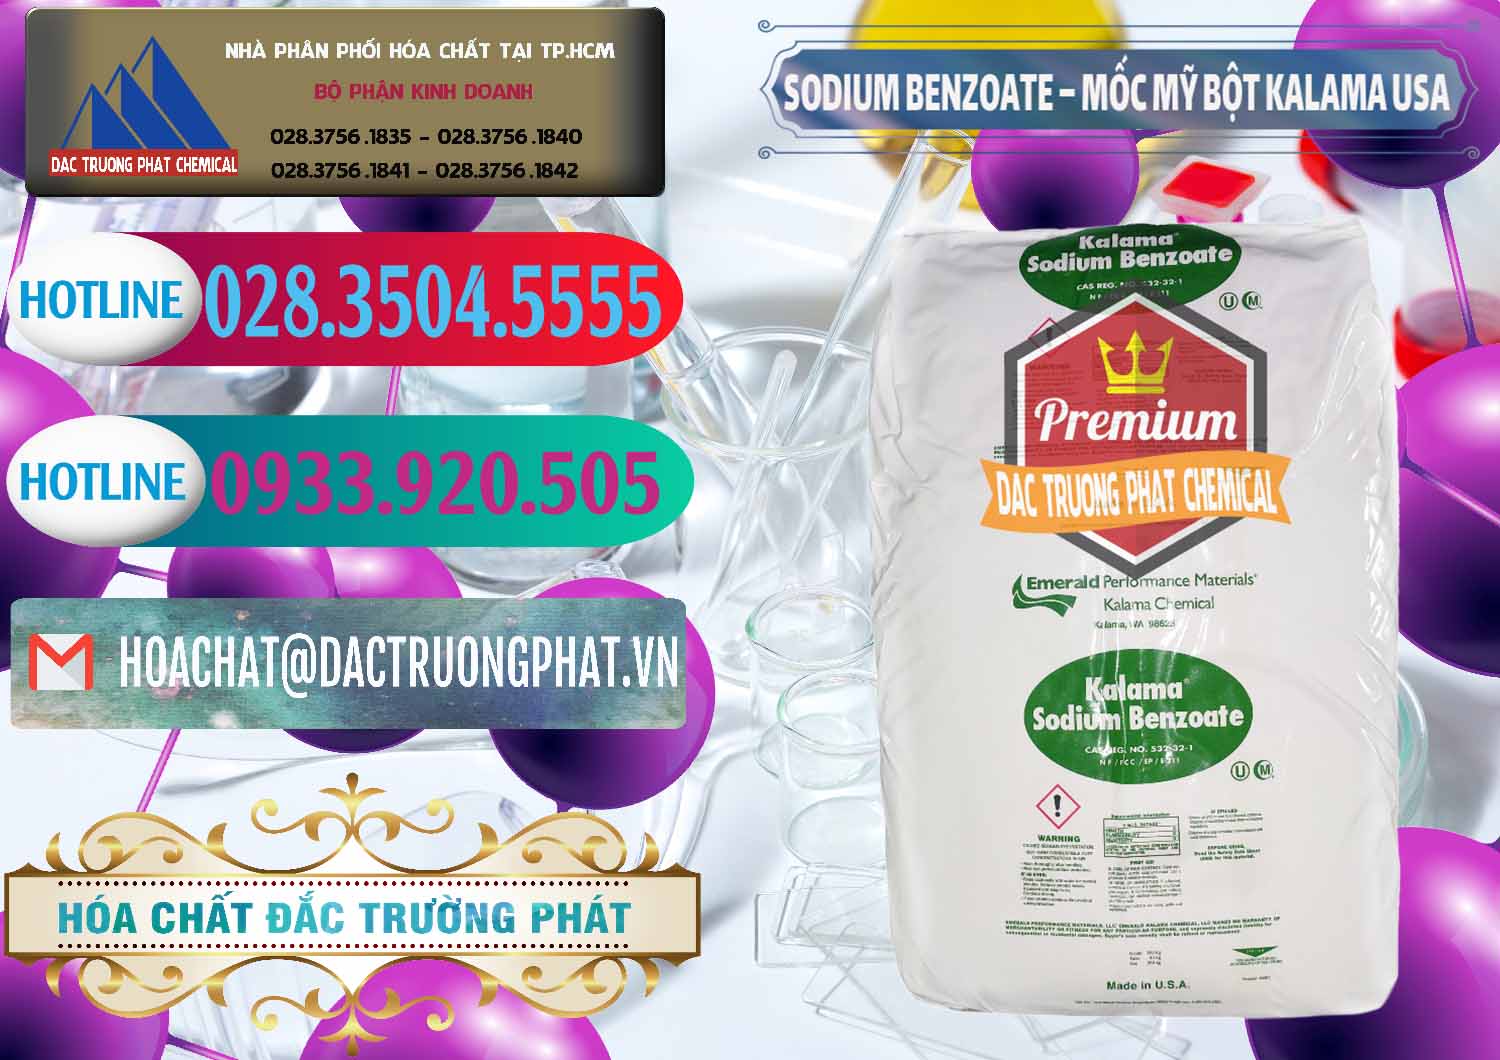 Cty kinh doanh ( bán ) Sodium Benzoate - Mốc Bột Kalama Food Grade Mỹ Usa - 0136 - Đơn vị chuyên nhập khẩu & phân phối hóa chất tại TP.HCM - truongphat.vn